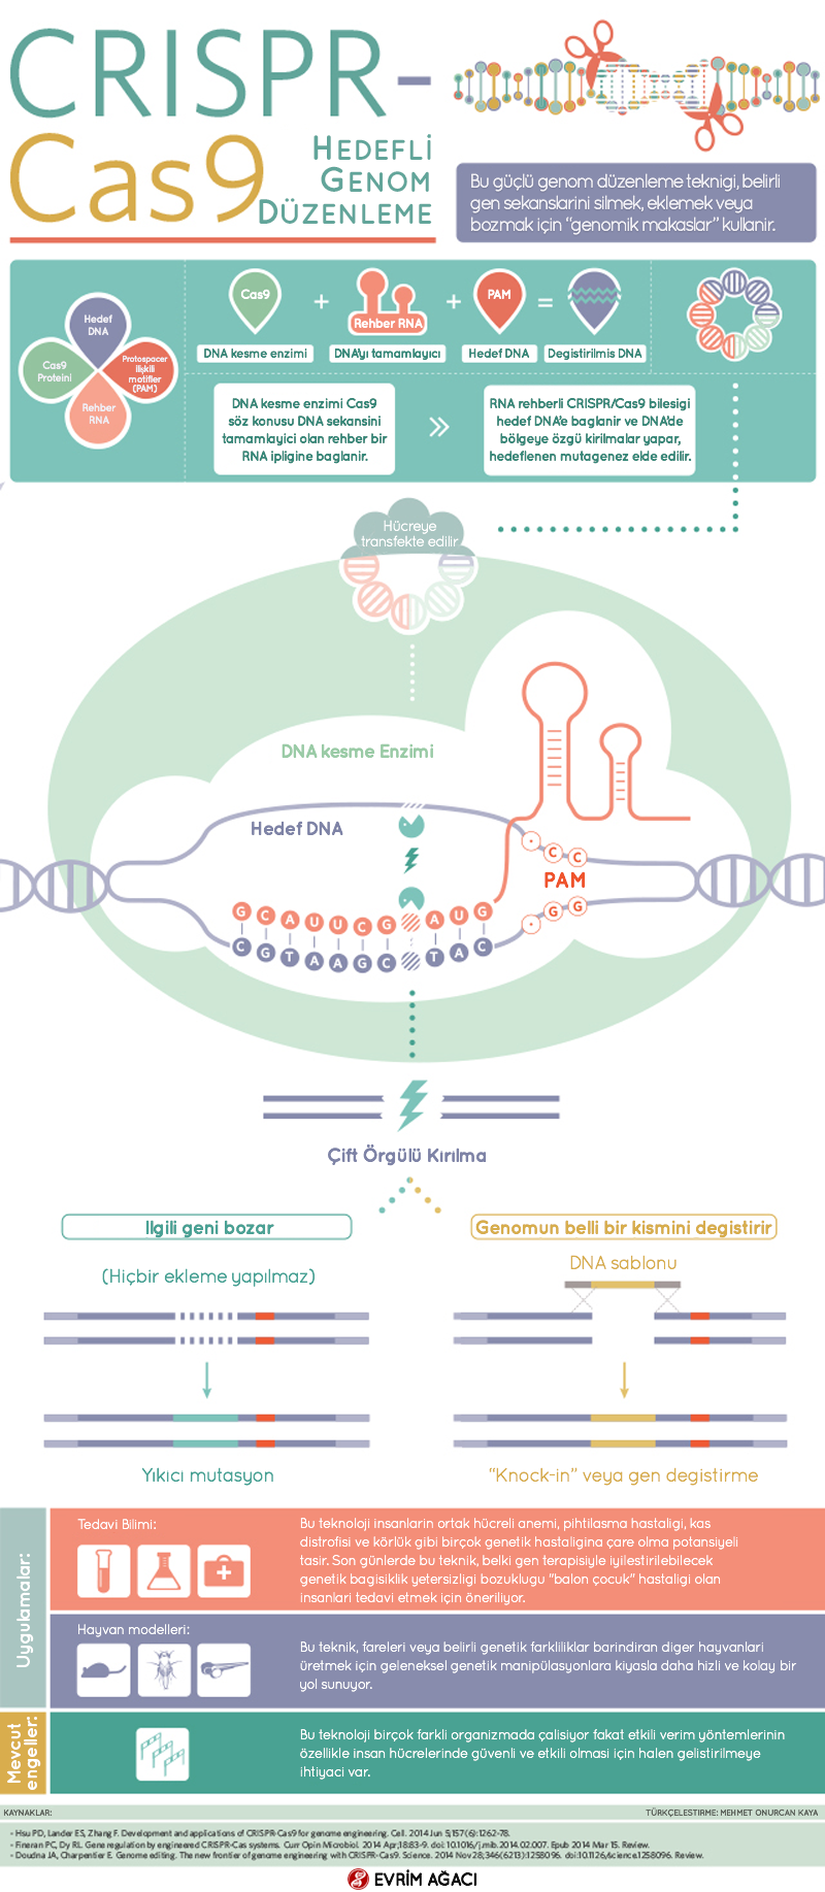 2010'lu yıllarda temelleri atılıp, 2013'ten itibaren tüm Dünya'yı kasıp kavuran CRISPR-Cas9 sistemini kullanarak gen düzenleme teknolojisi, bugüne kadar insanlığın keşfetmiş olduğu en etkili, en hızlı, en başarılı genom değiştirme yöntemlerinden birisidir.